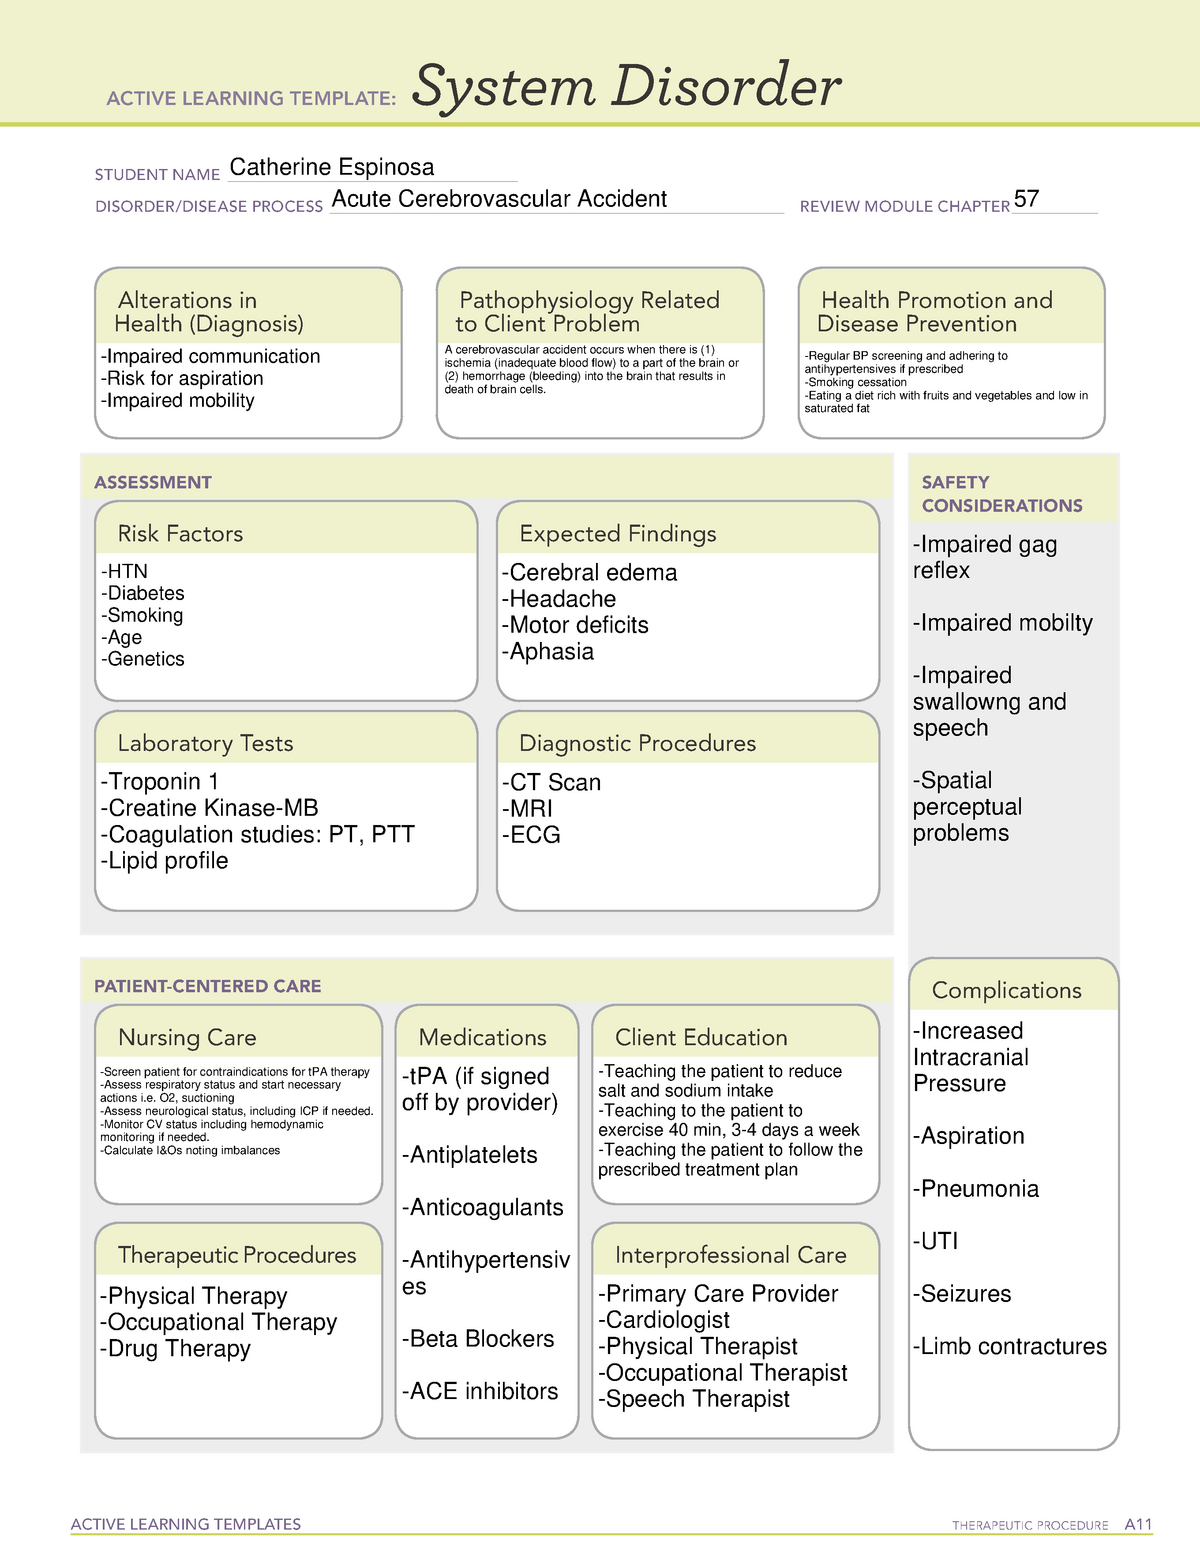 Stroke (CVA) System Disorder fon101 fundamentals of nursing StuDocu